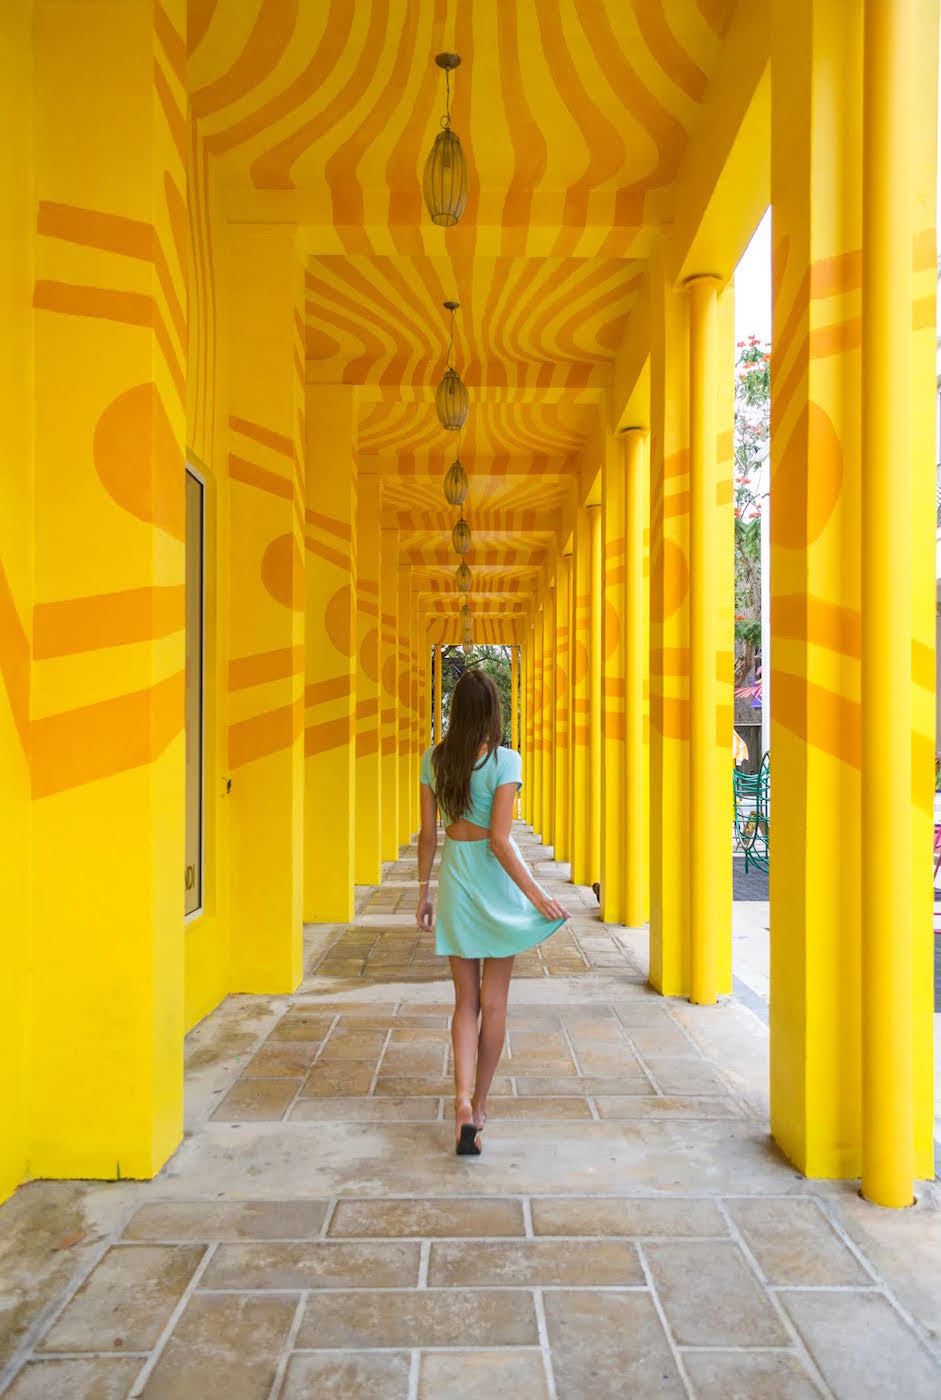 The Fendi Colonnade in the Design District in Miami.